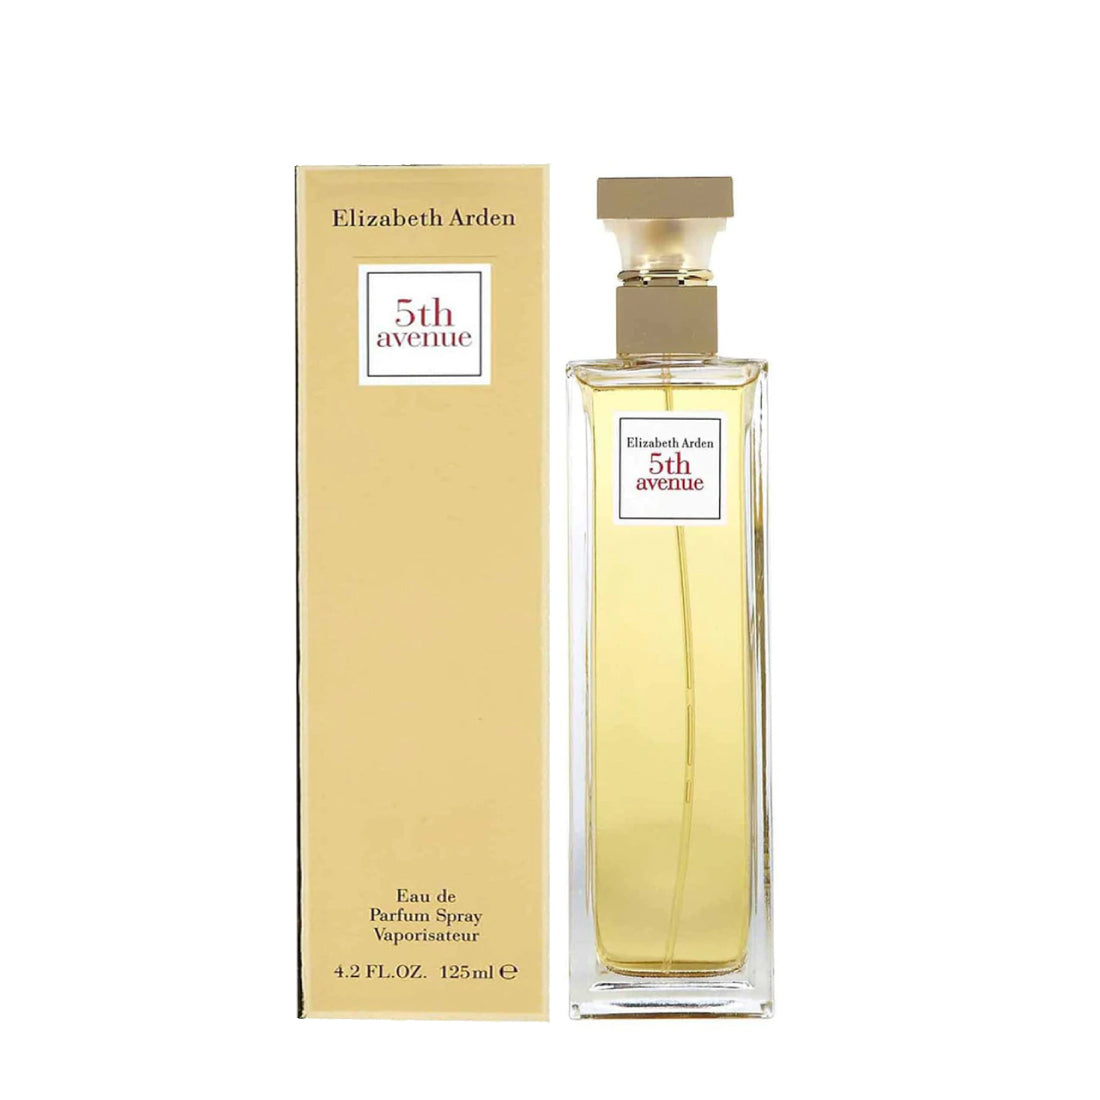 5th Avenue By Plus – Perfume Outlet Spray Eau Parfum For Arden De Women Elizabeth